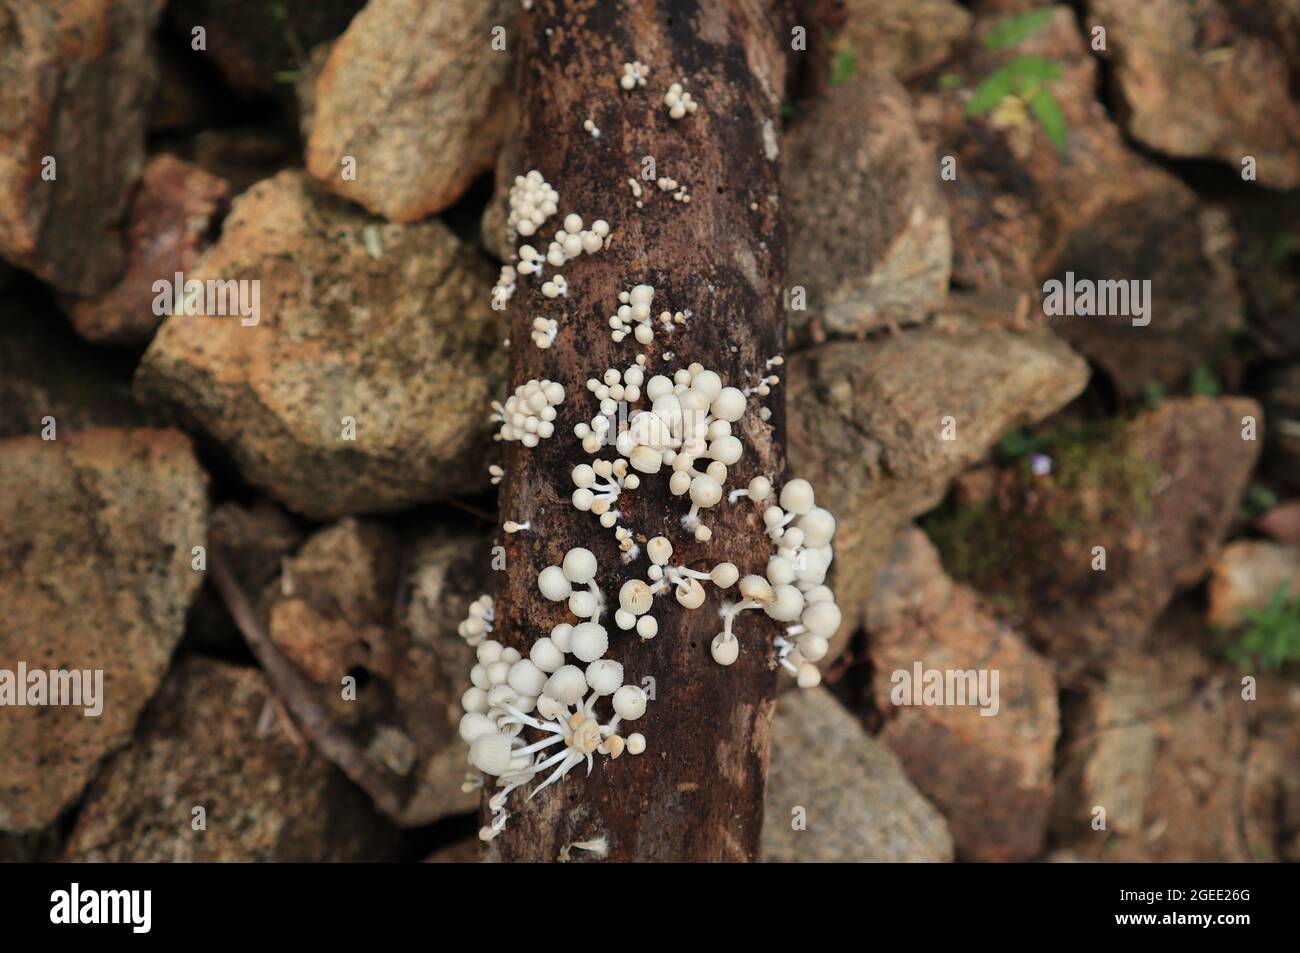 Vista aérea de grupos de pequeños hongos blancos esparcidos en la superficie de un gran tronco de árbol muerto Foto de stock